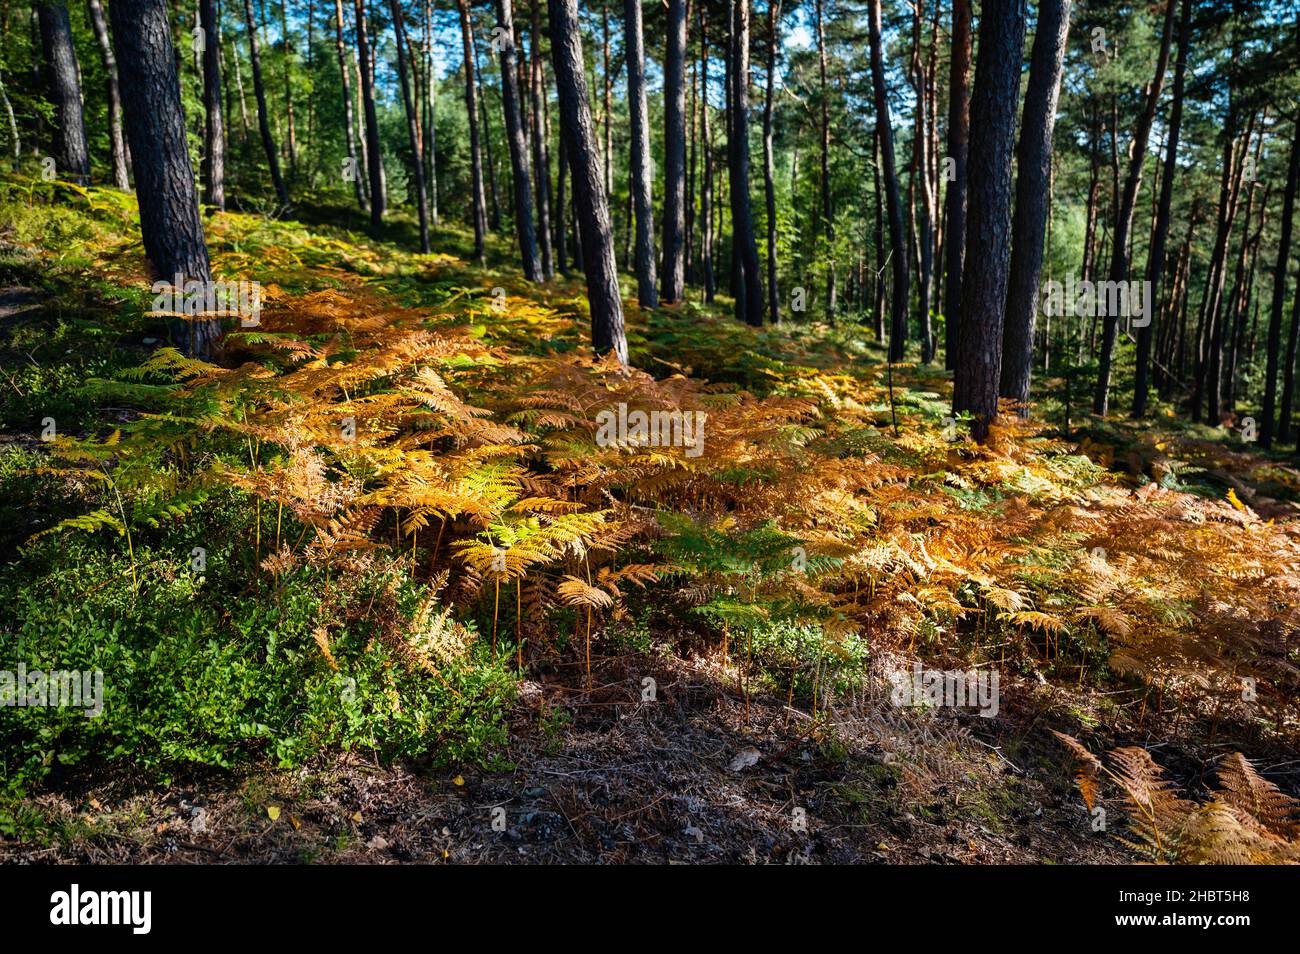 Gran vegetación de plantas de salobre, helecho y arándanos en madera de pino, ejemplo de diversidad de condiciones naturales en biotopo, Podprackov, Paraíso Checo. Foto de stock